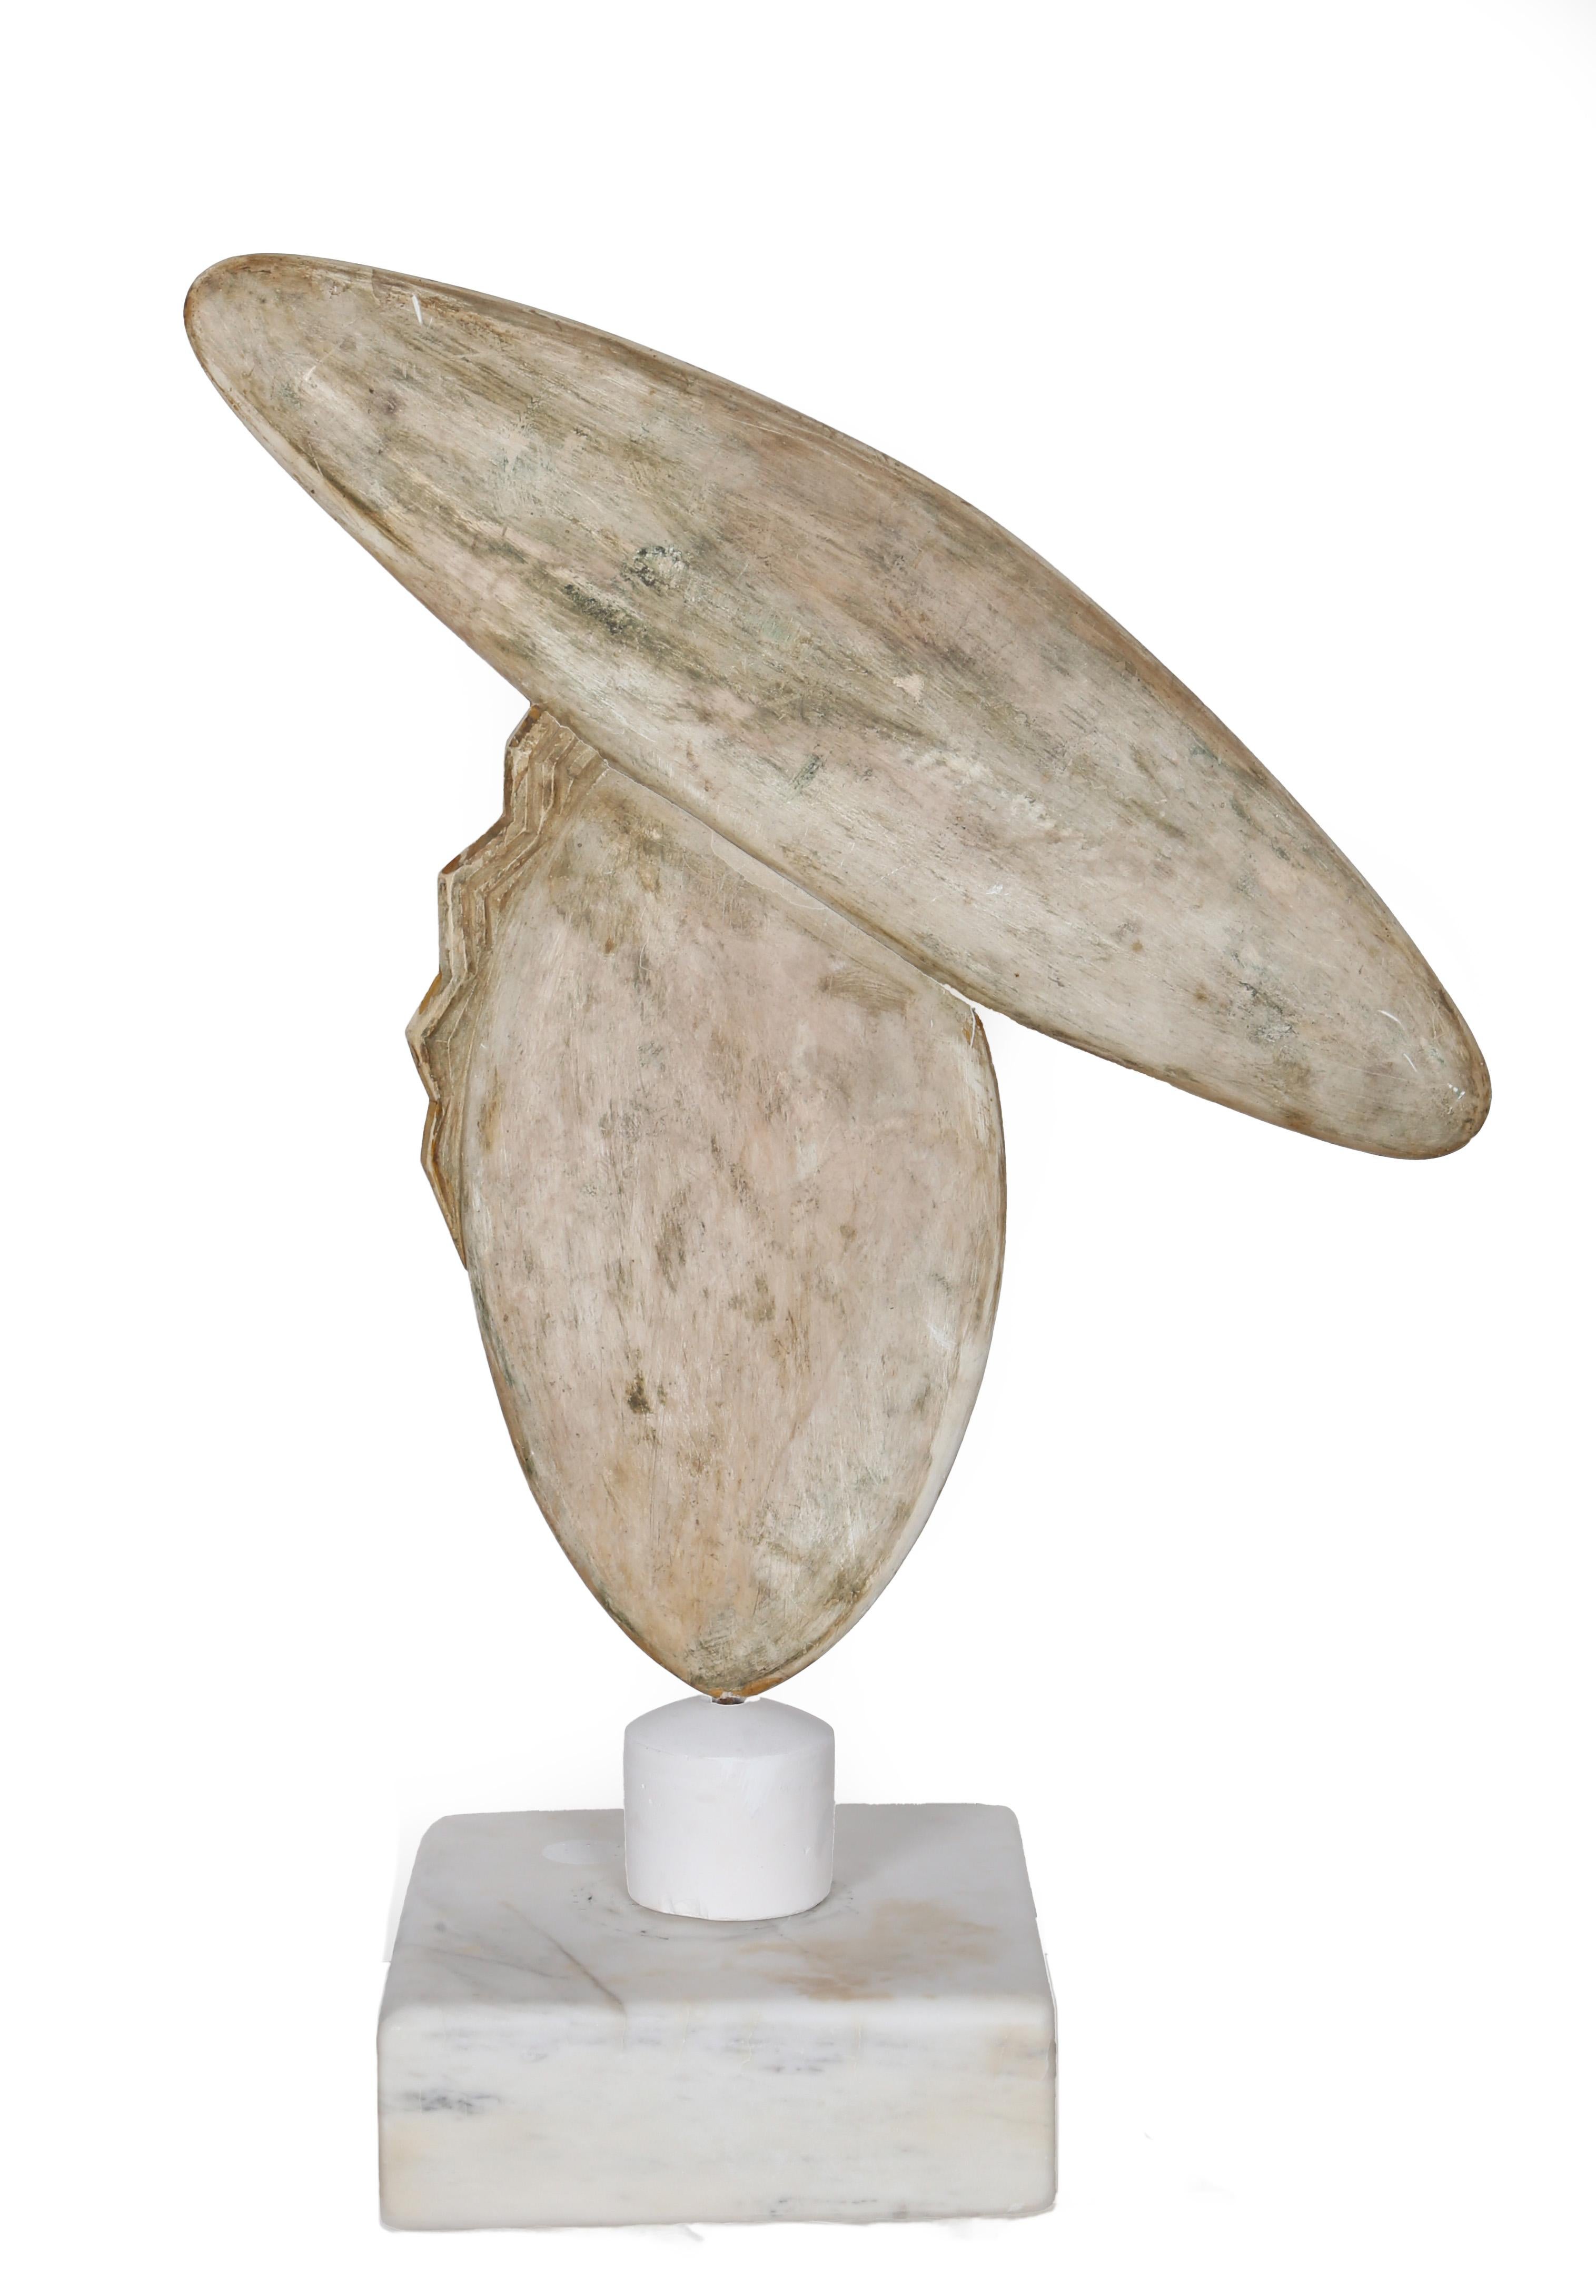 Eine minimalistische Darstellung einer Frau mit einem großen Hut von Constantin Antonovici. Diese Skulptur aus weißem Marmor besteht fast vollständig aus zwei aufeinandertreffenden Ovalen, wobei an der unteren Form einige Rillen zu sehen sind, die